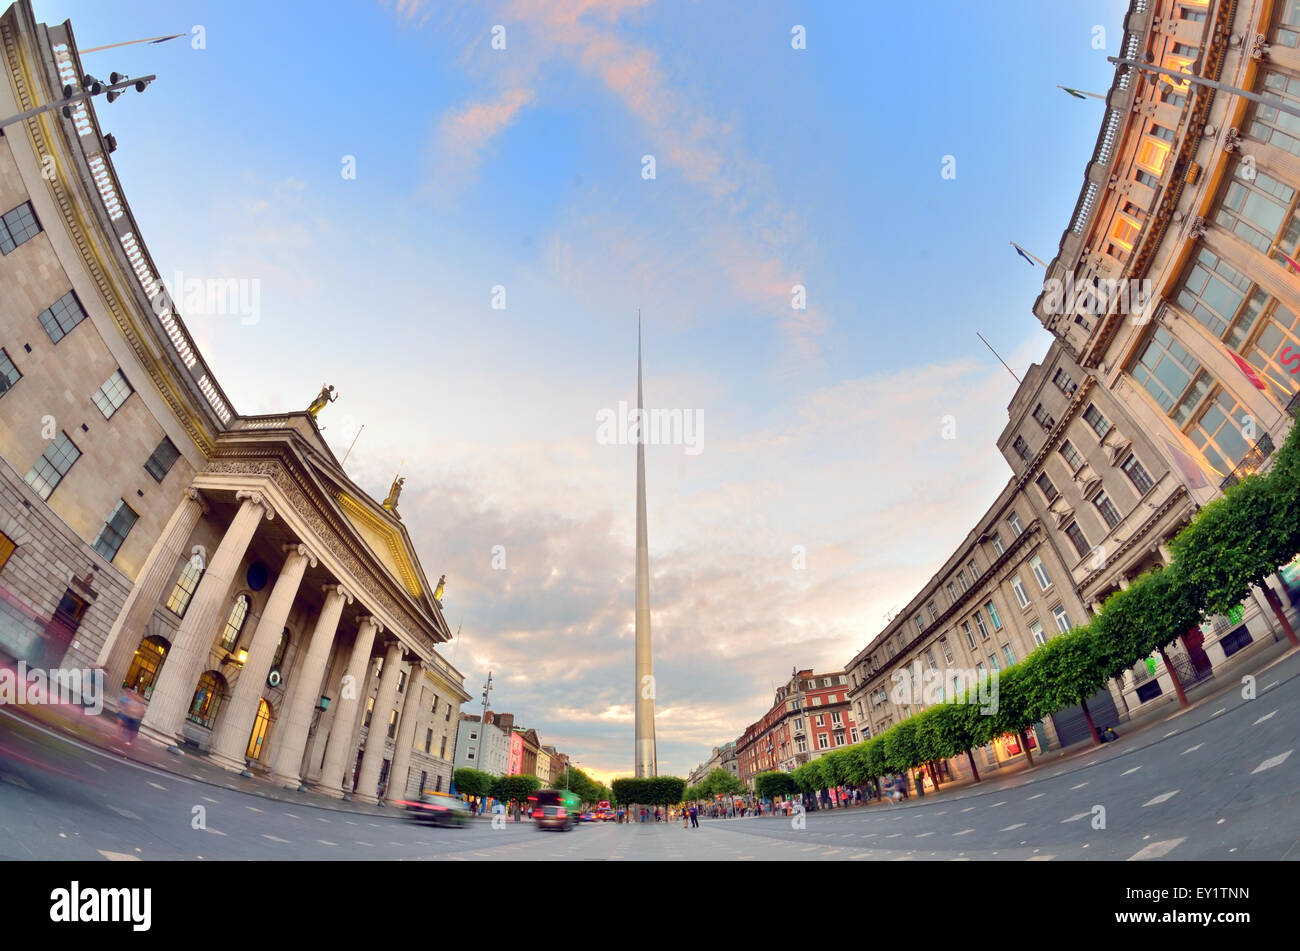 Famosos en el centro de Dublin, Irlanda - símbolo spire Foto de stock